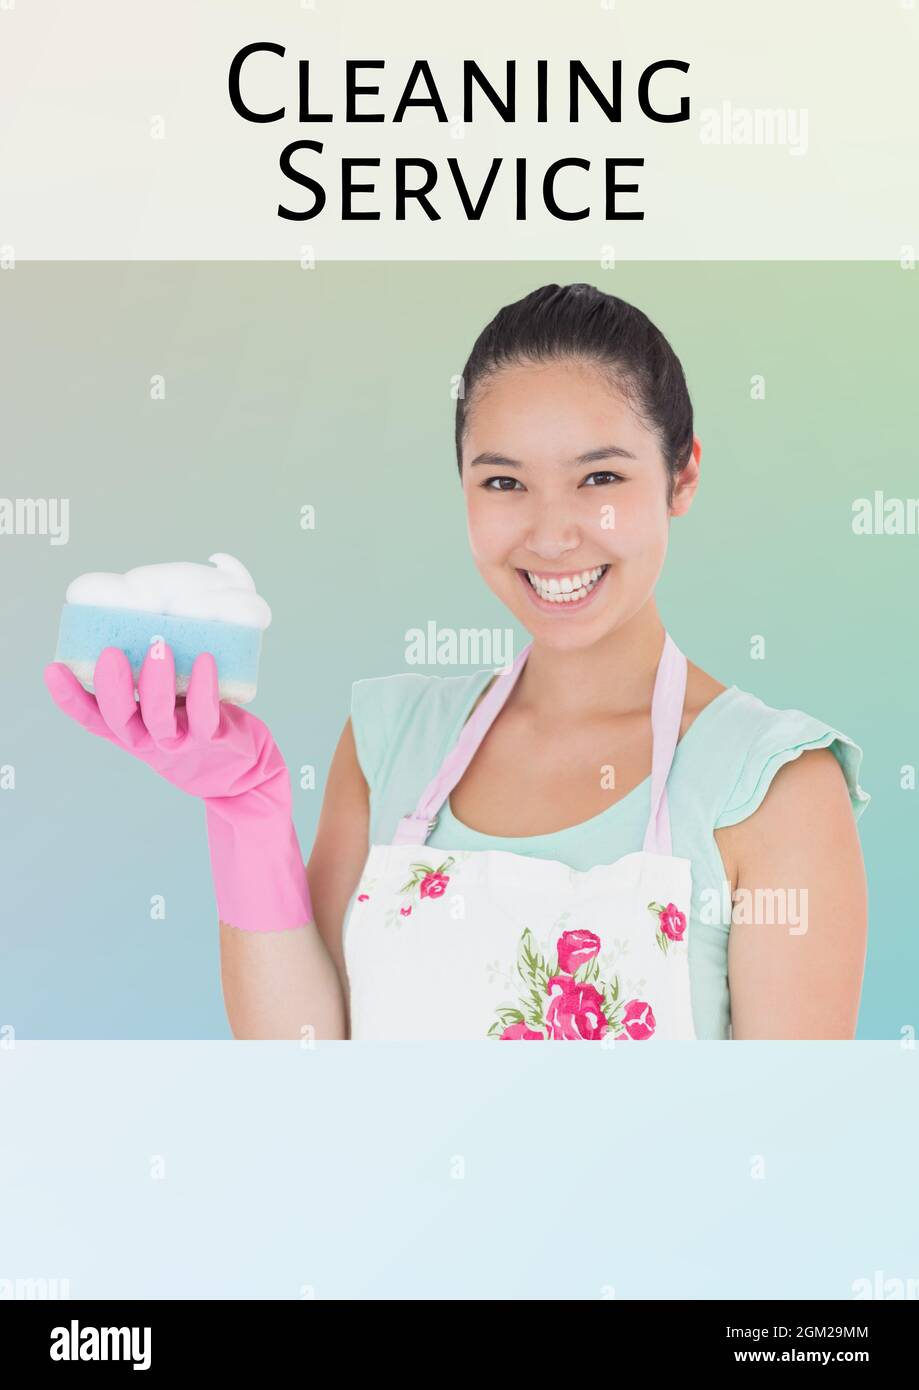 Texte du service de nettoyage sur femme asiatique tenant une éponge de nettoyage sur fond vert Banque D'Images